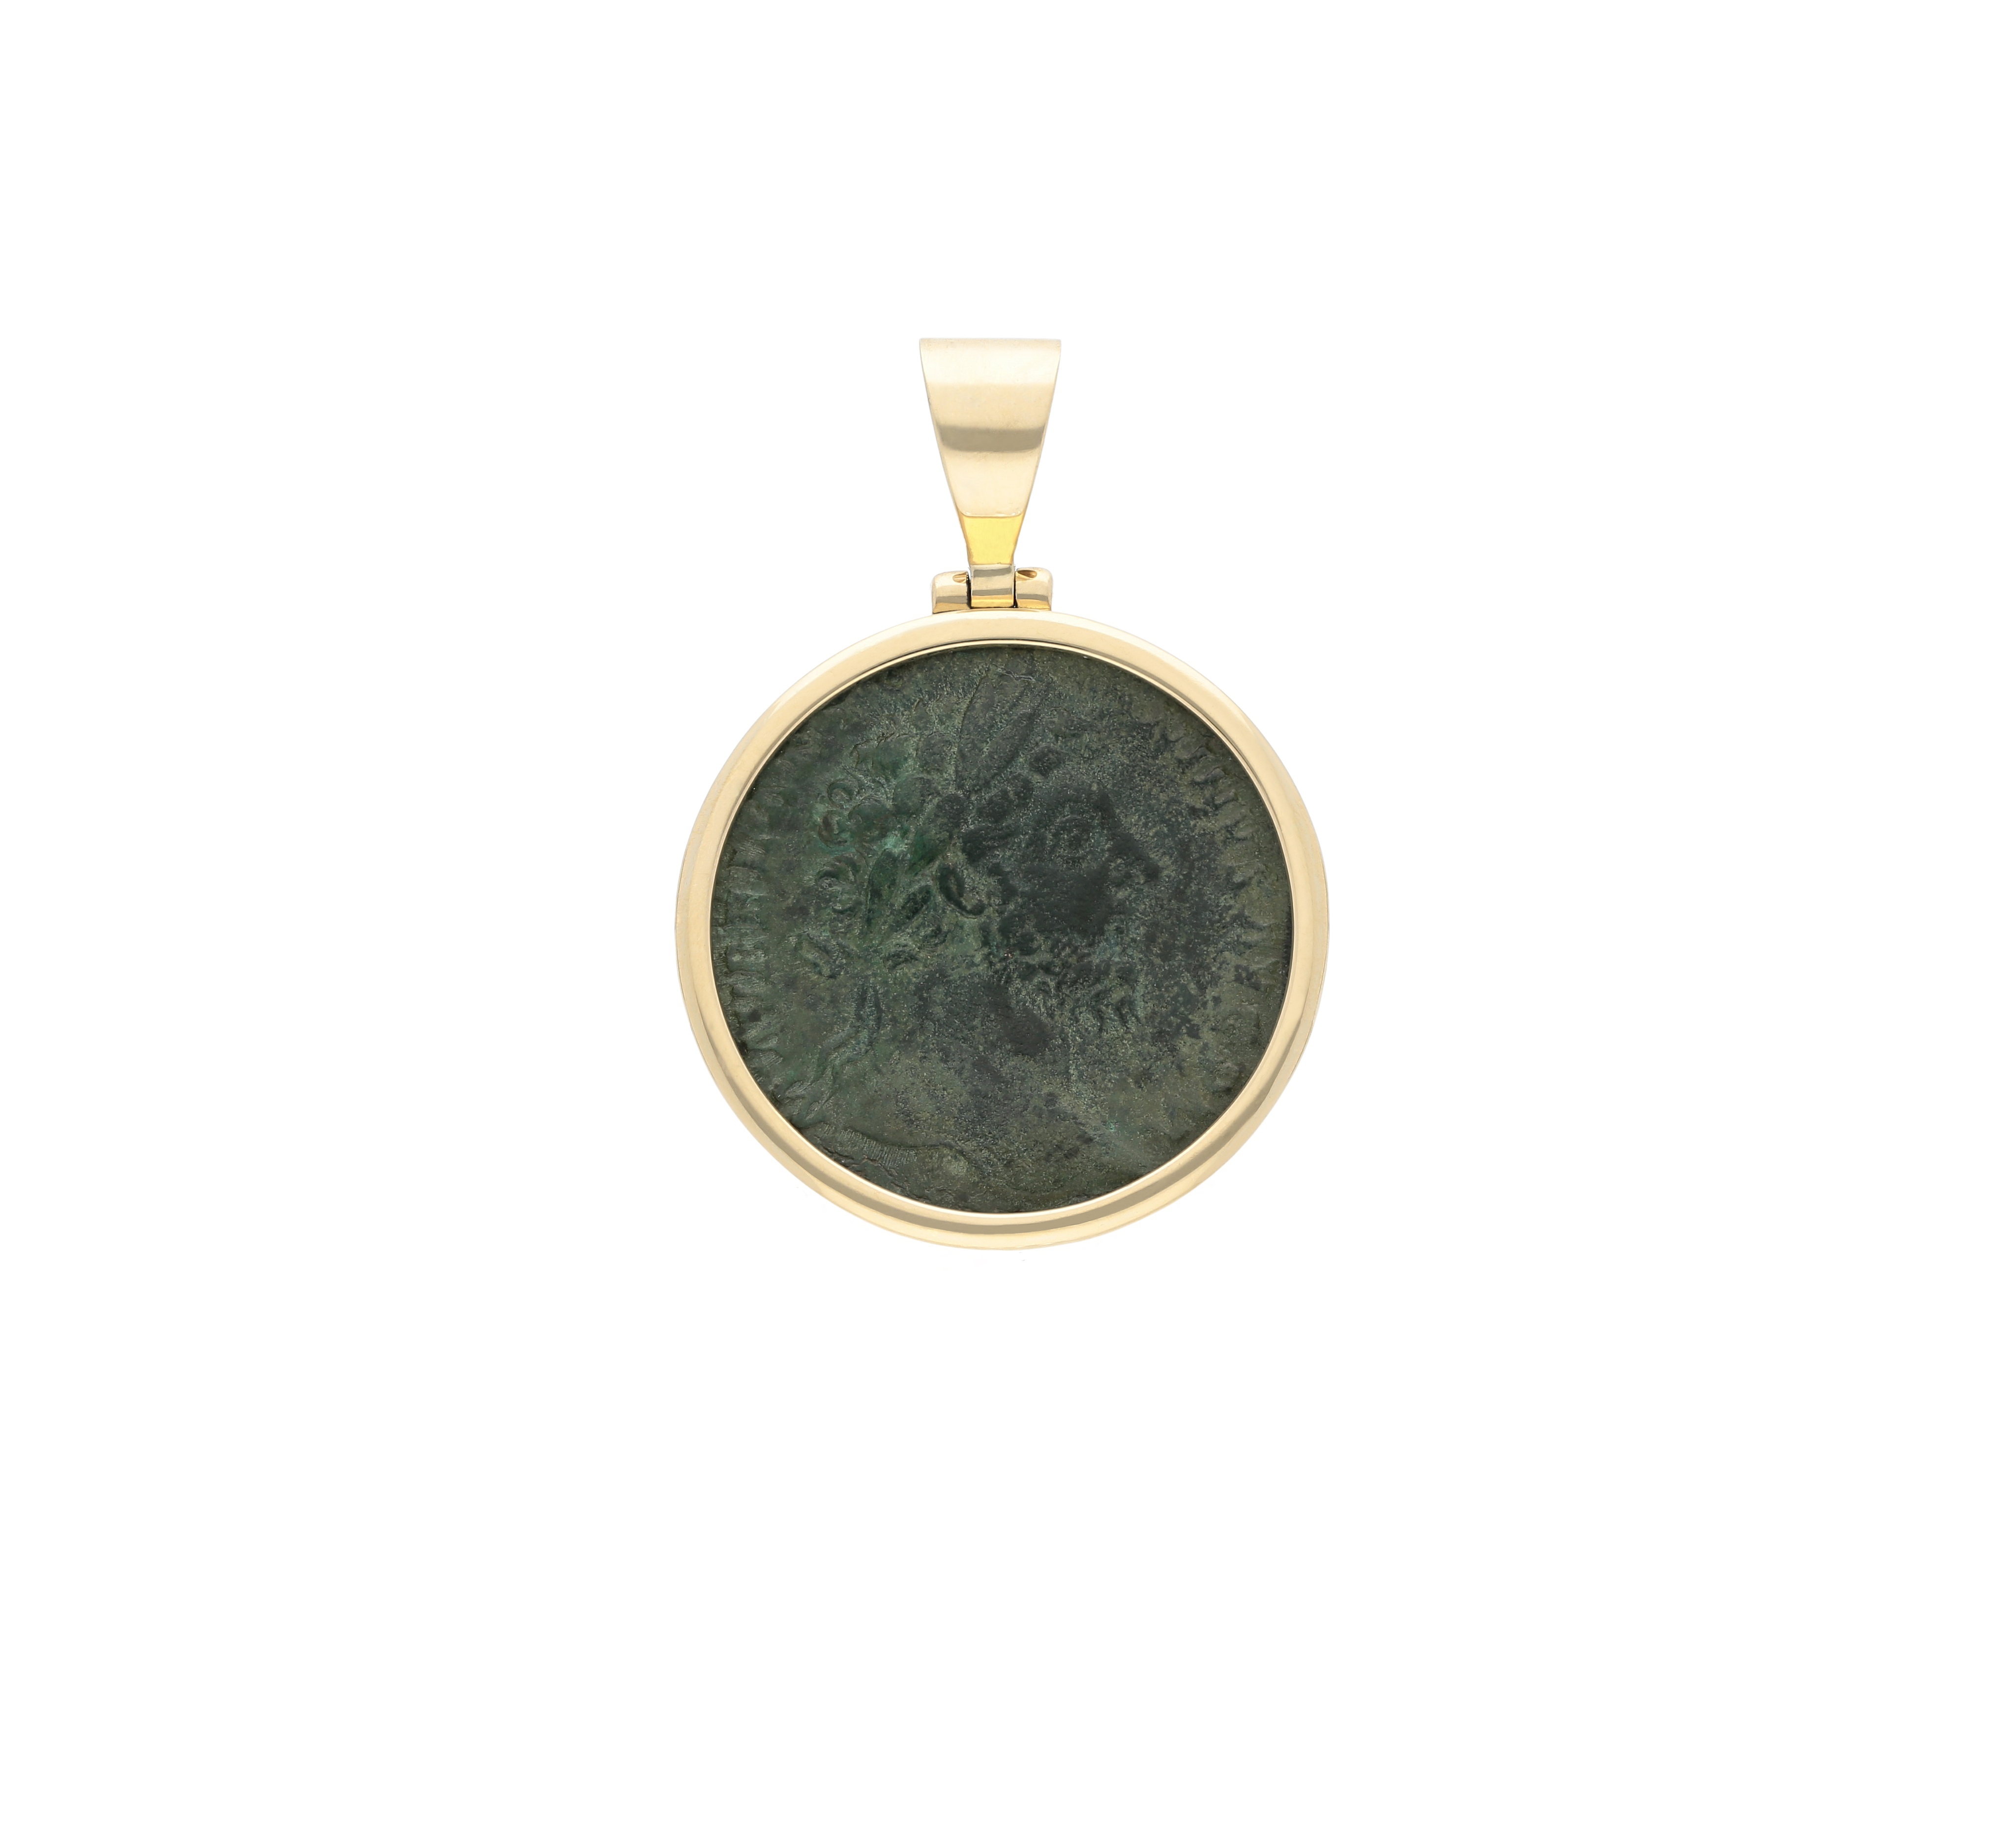 roman coin emperor Marcus Aurelius in gold 18kt yellow pendant